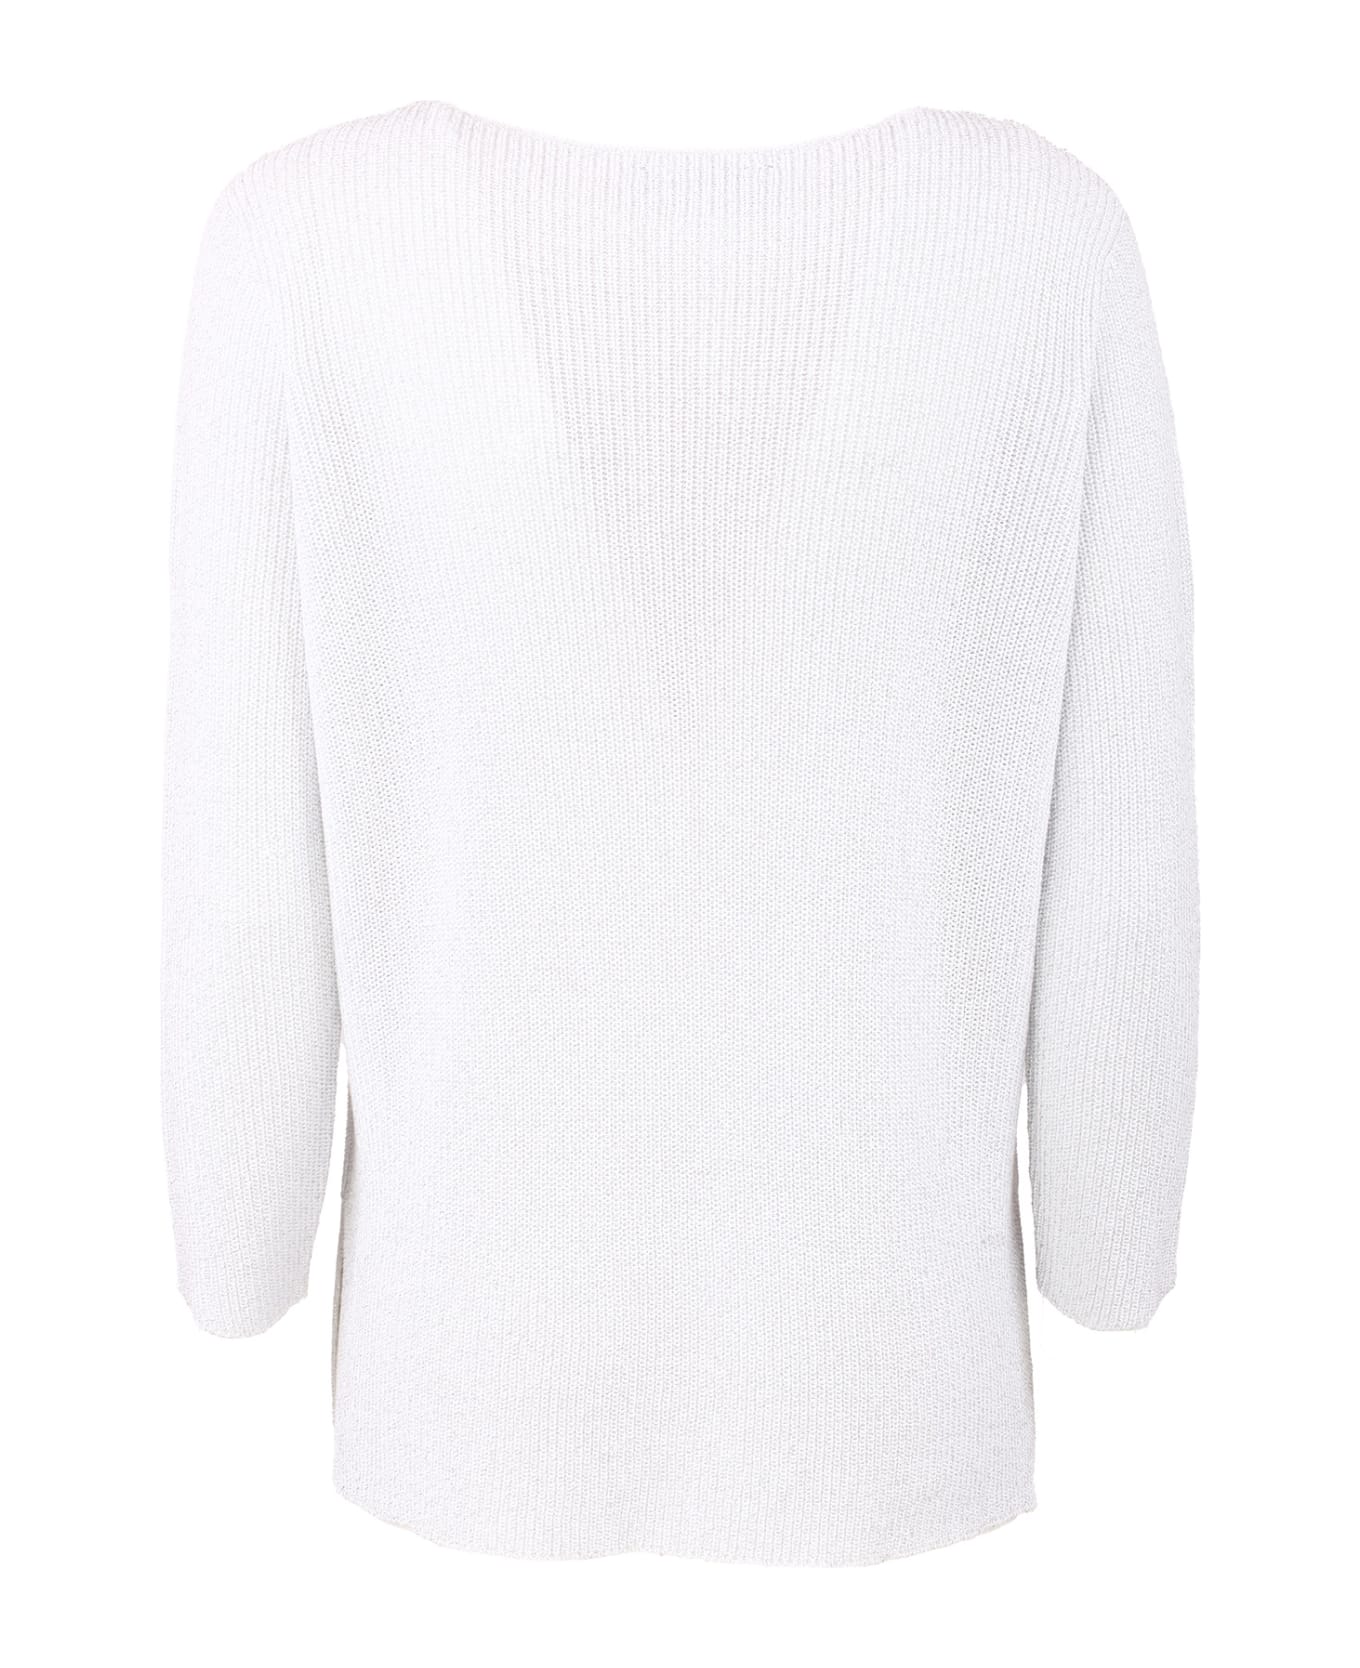 Fabiana Filippi Cotton Sweater - Bianco ottico ニットウェア